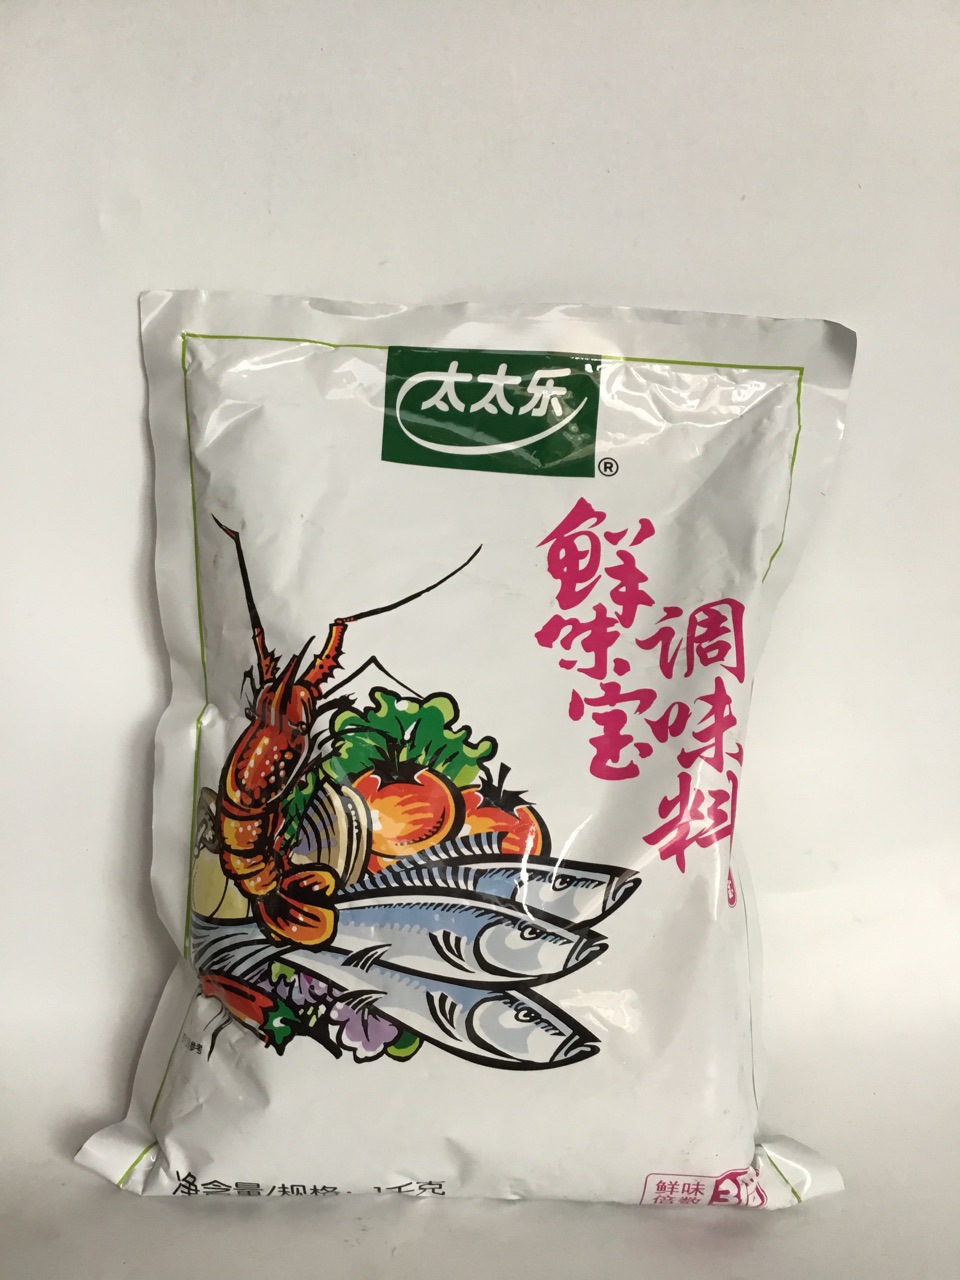 太太乐鲜味宝1千克.10袋 增鲜型调味料替代味精炒菜 精选餐饮火锅